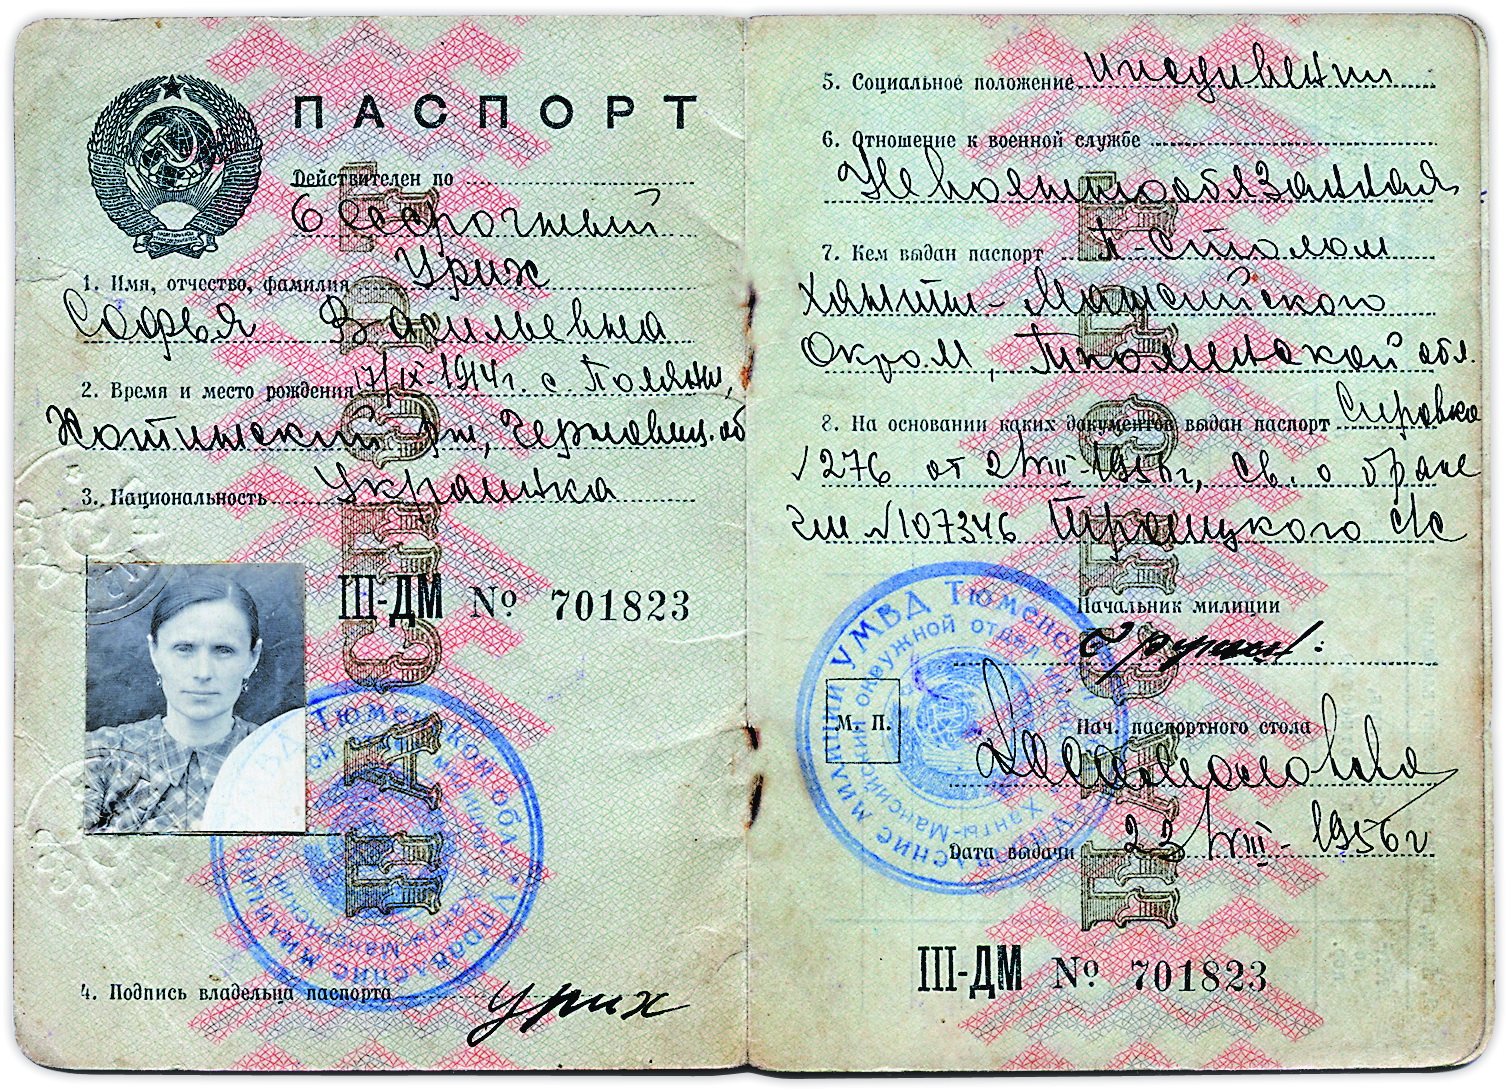 Паспорт варога народу. Фото надане автором